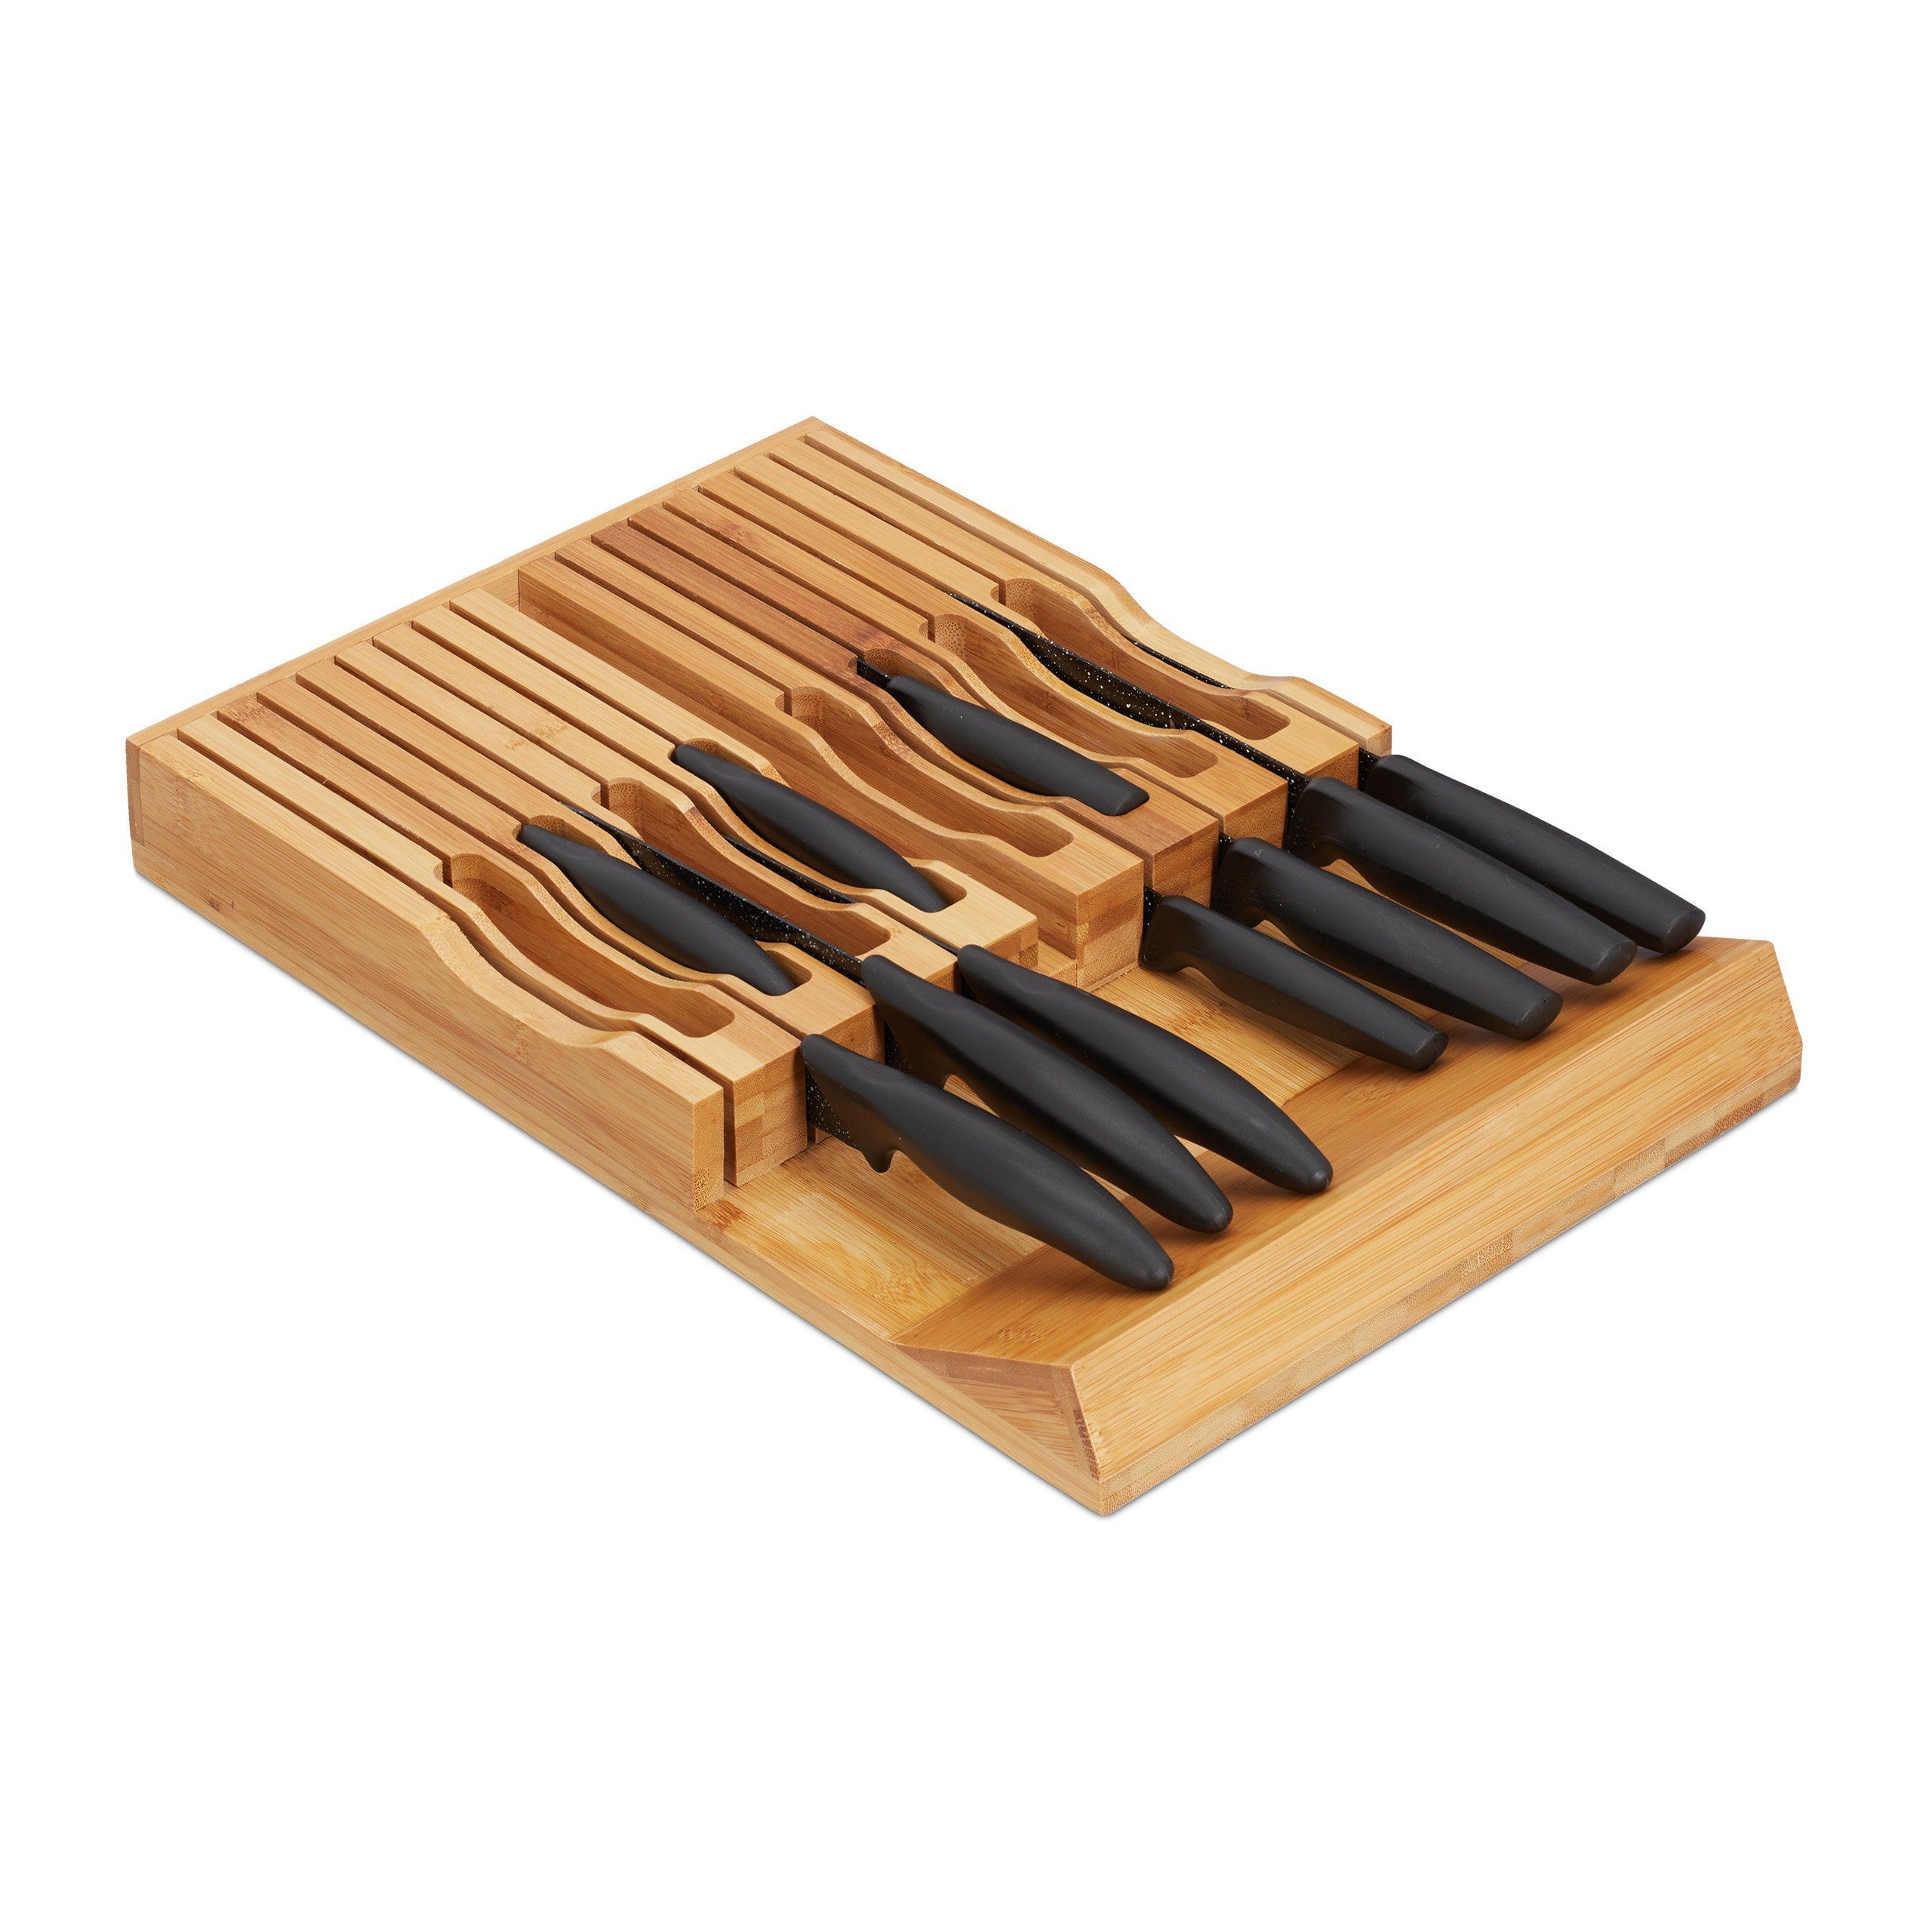 17 für relaxdays Bambus Messer Messerorganizer Messerblock